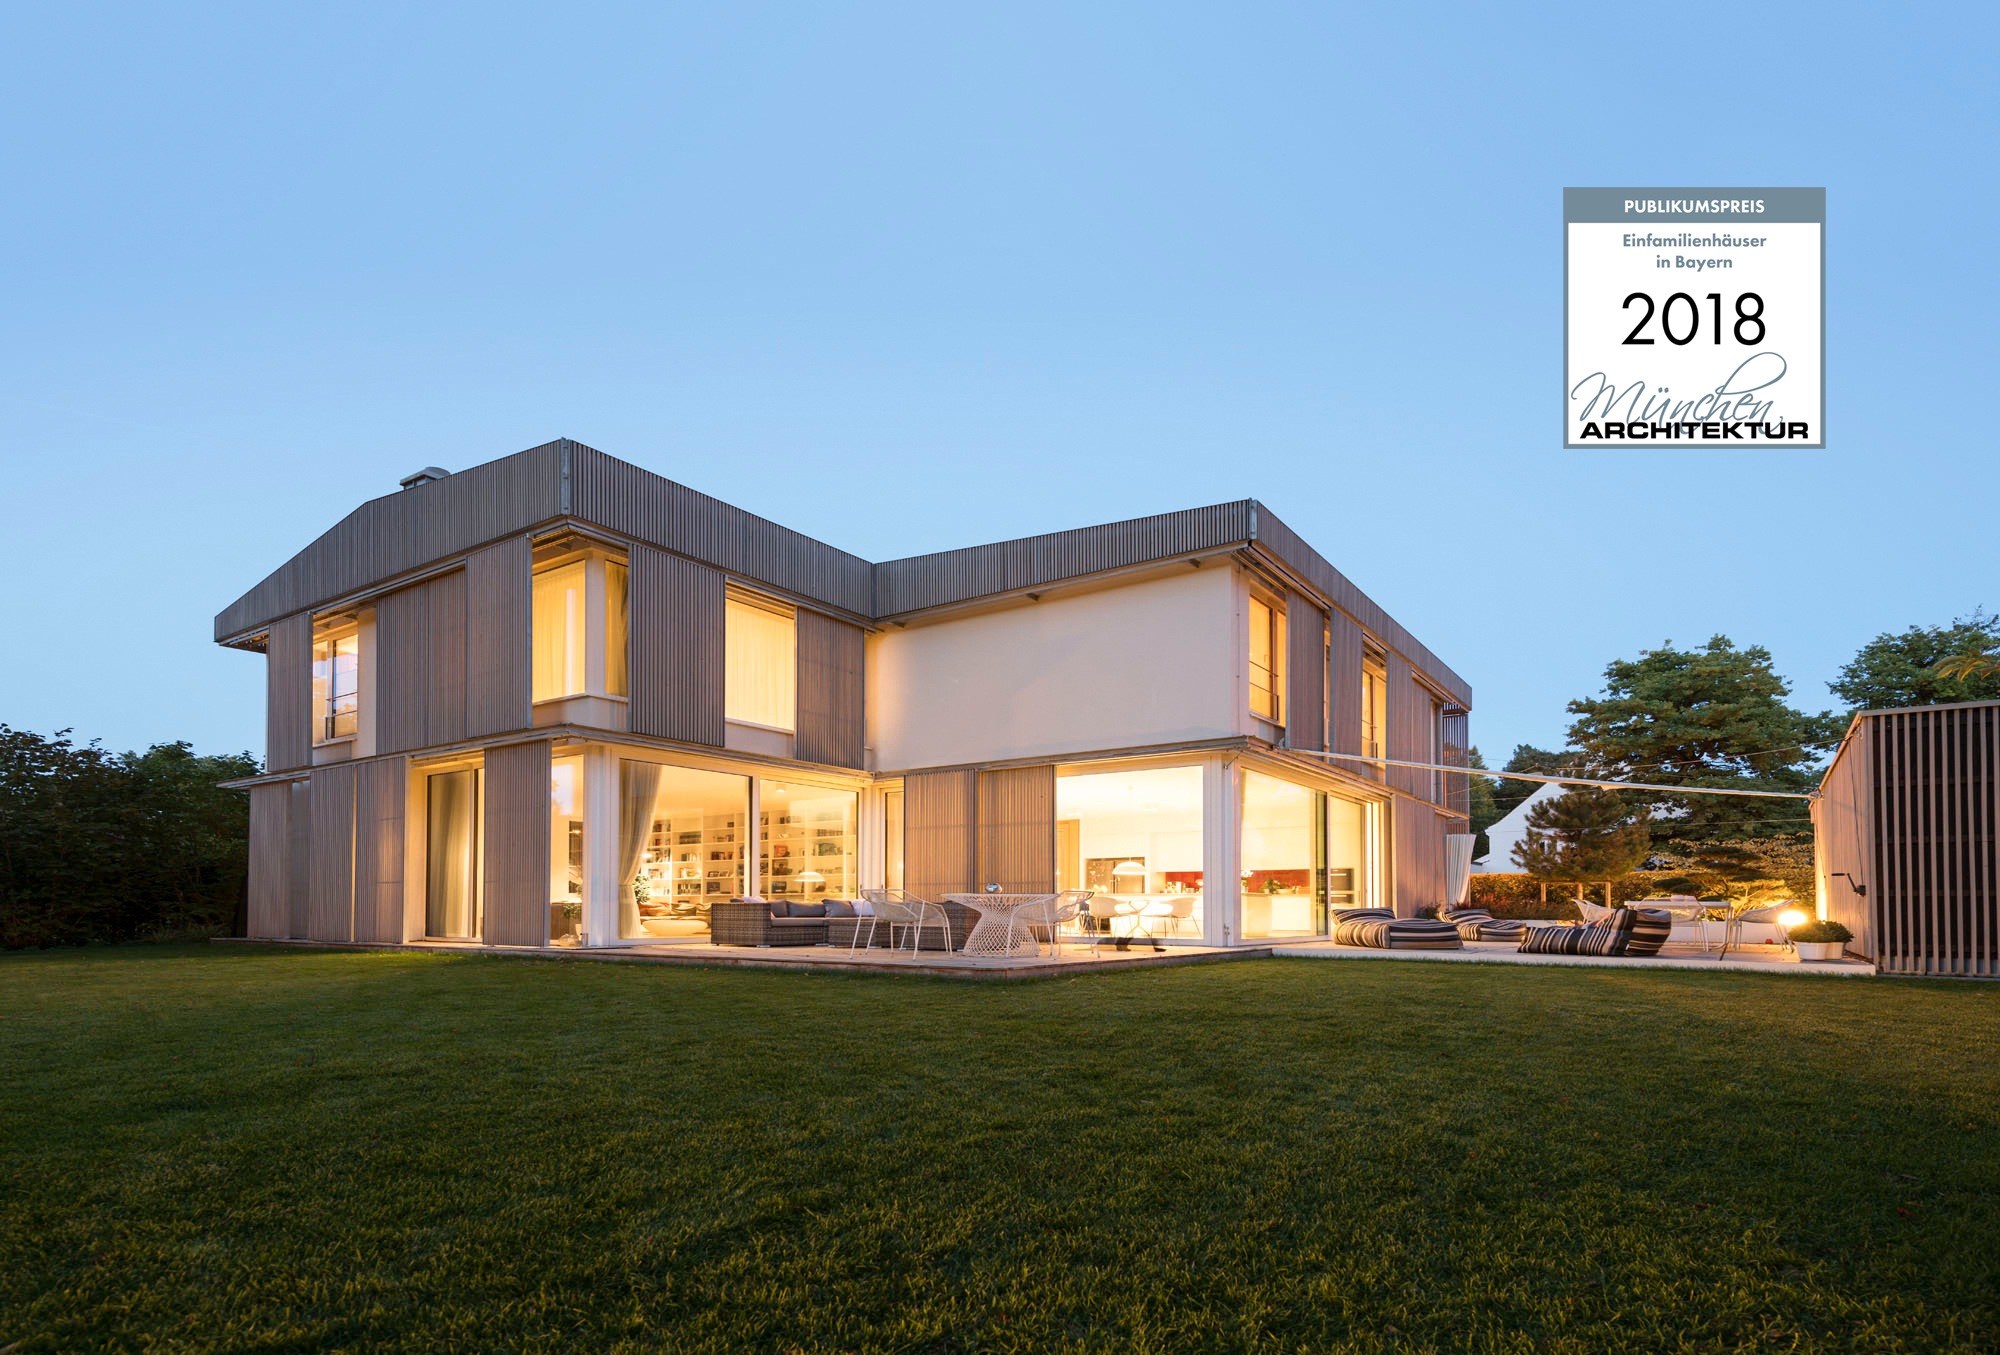 Haus Strandkorb ausgezeichnet mit dem Publikumspreis im Portal MünchenArchitektur